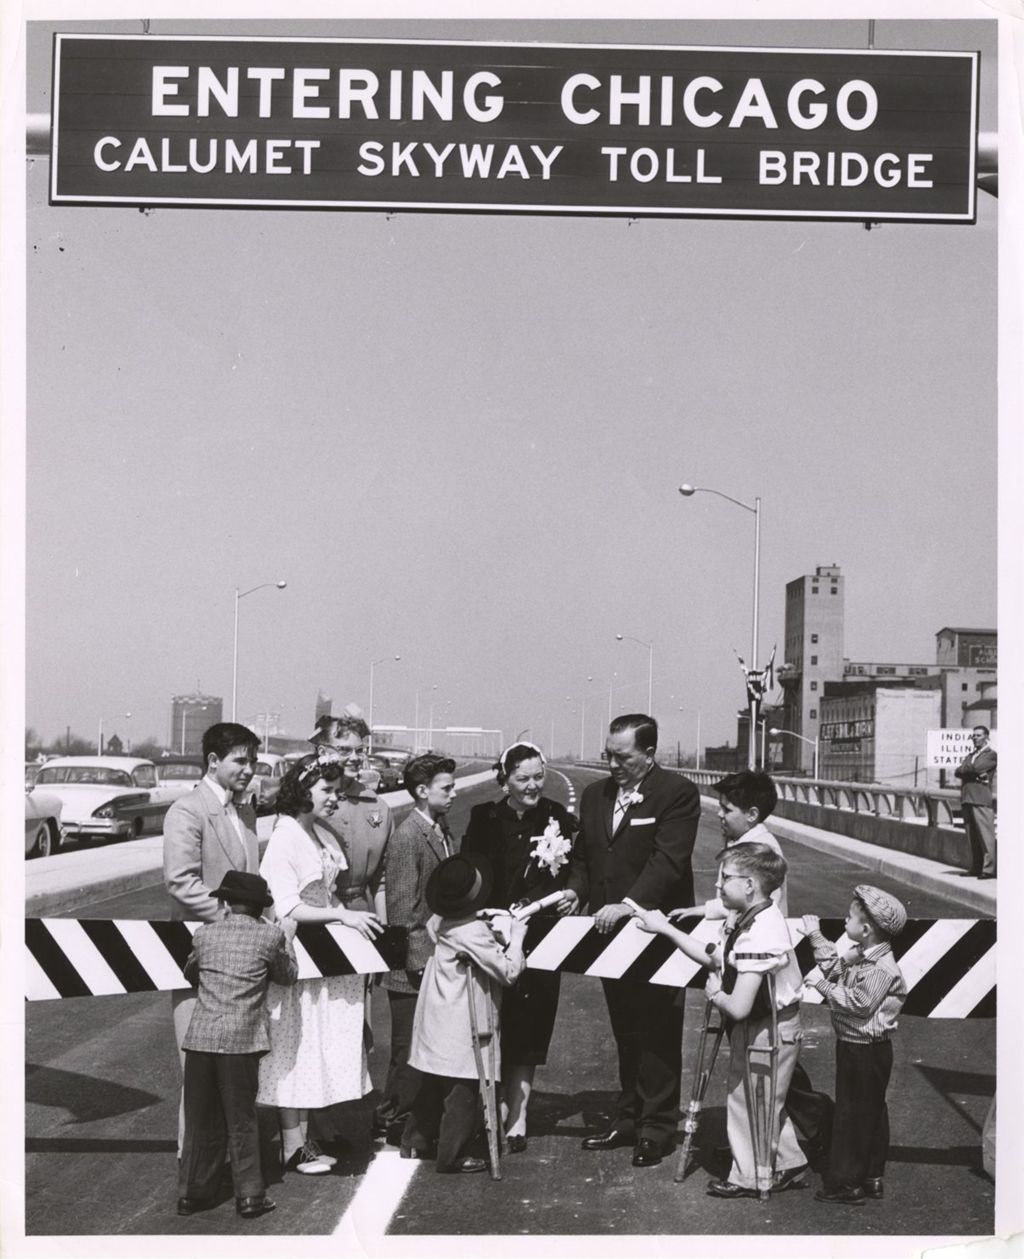 Miniature of Calumet Skyway opening ceremony